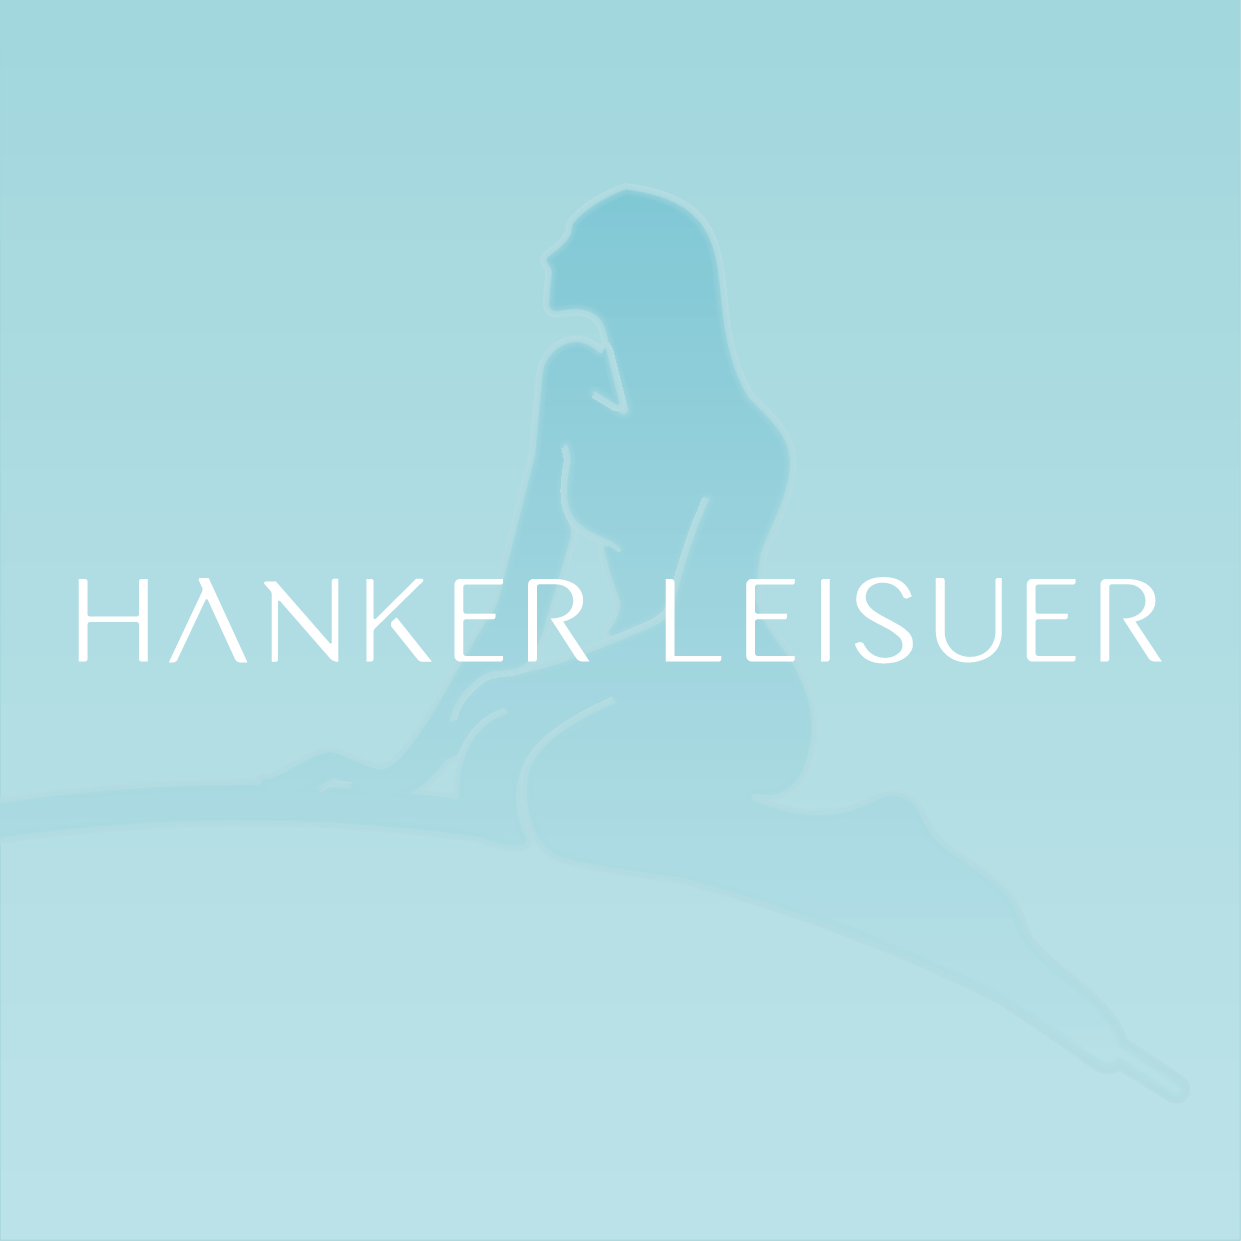 HANKER LEISUER